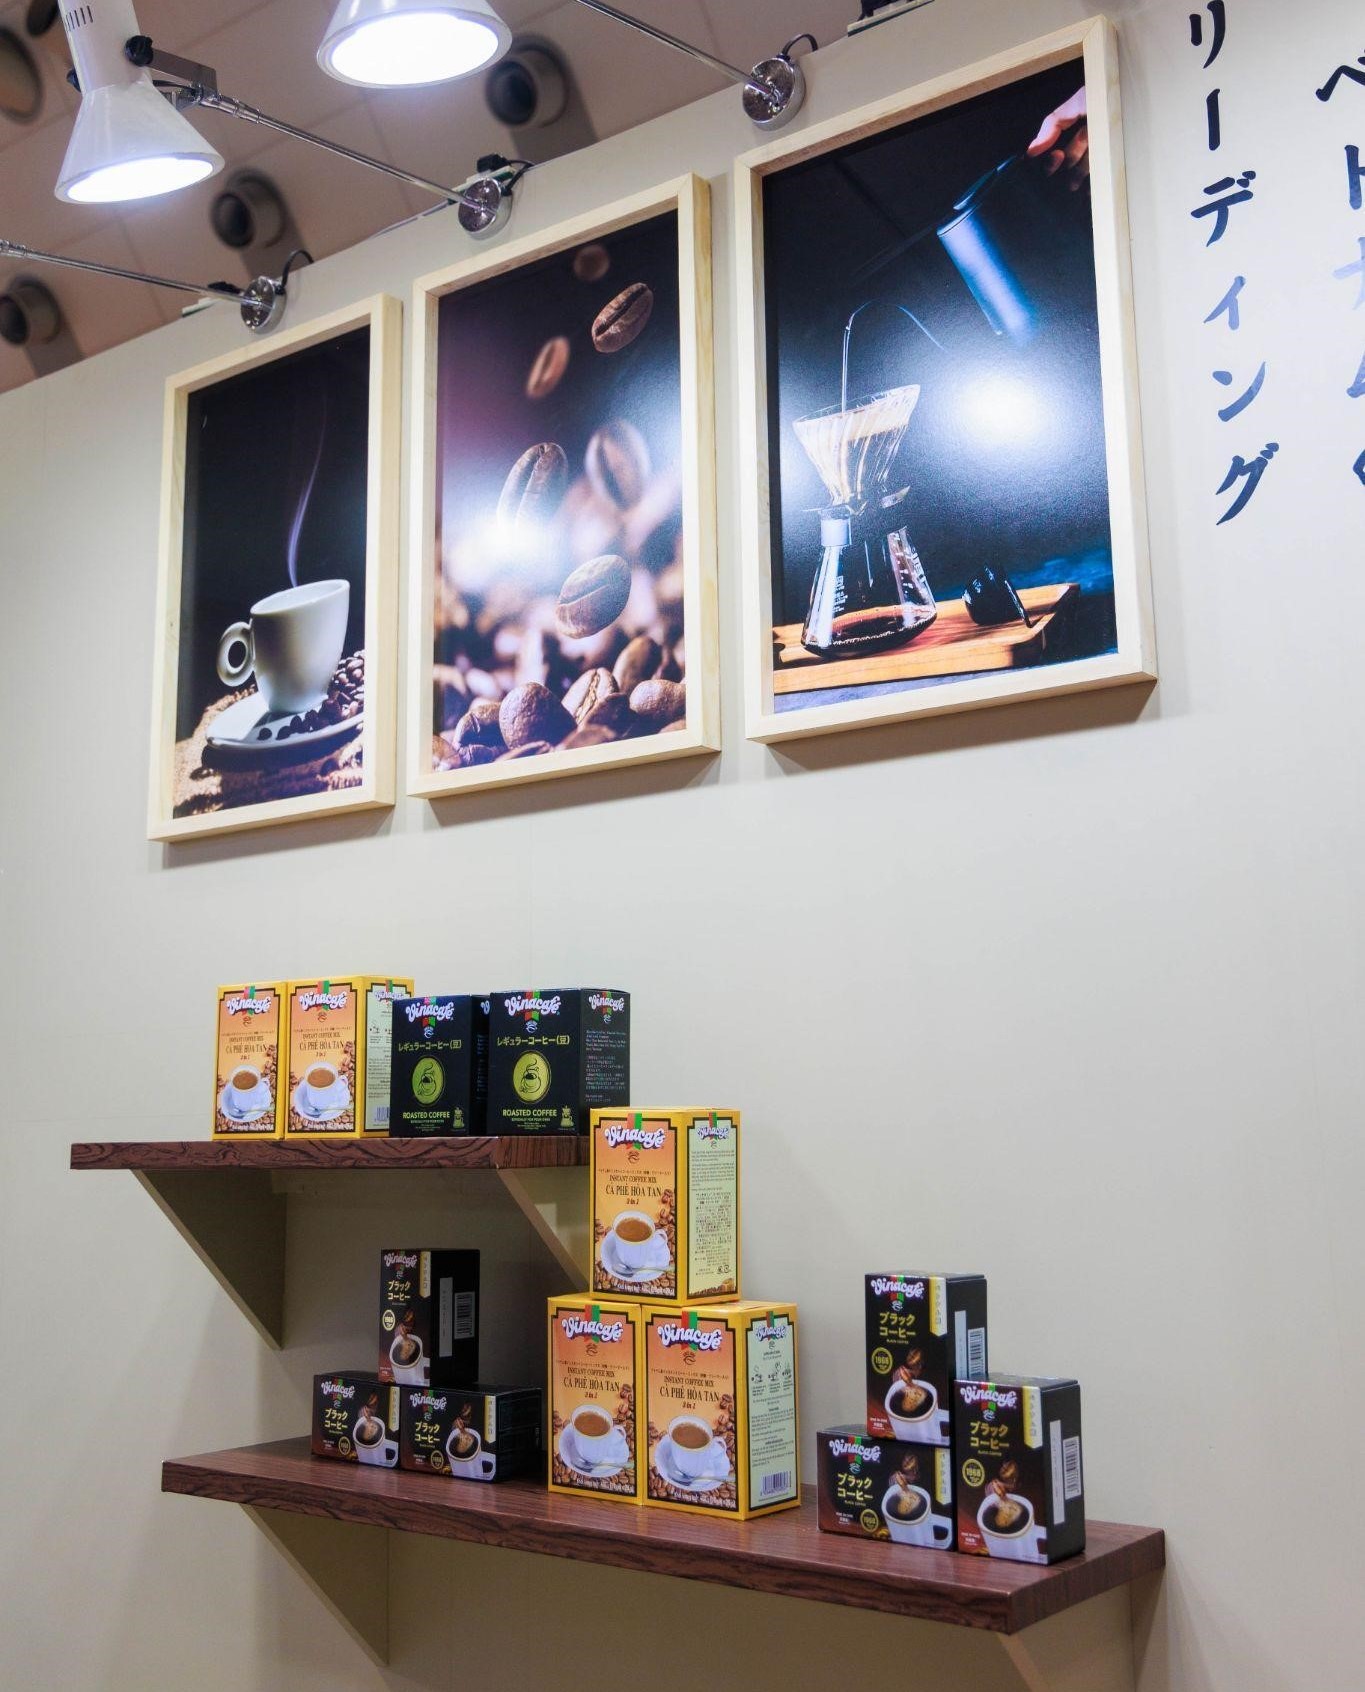 Vinacafé khiến người Nhật "hớp hồn" với tách cà phê chất lượng hảo hạng - 3